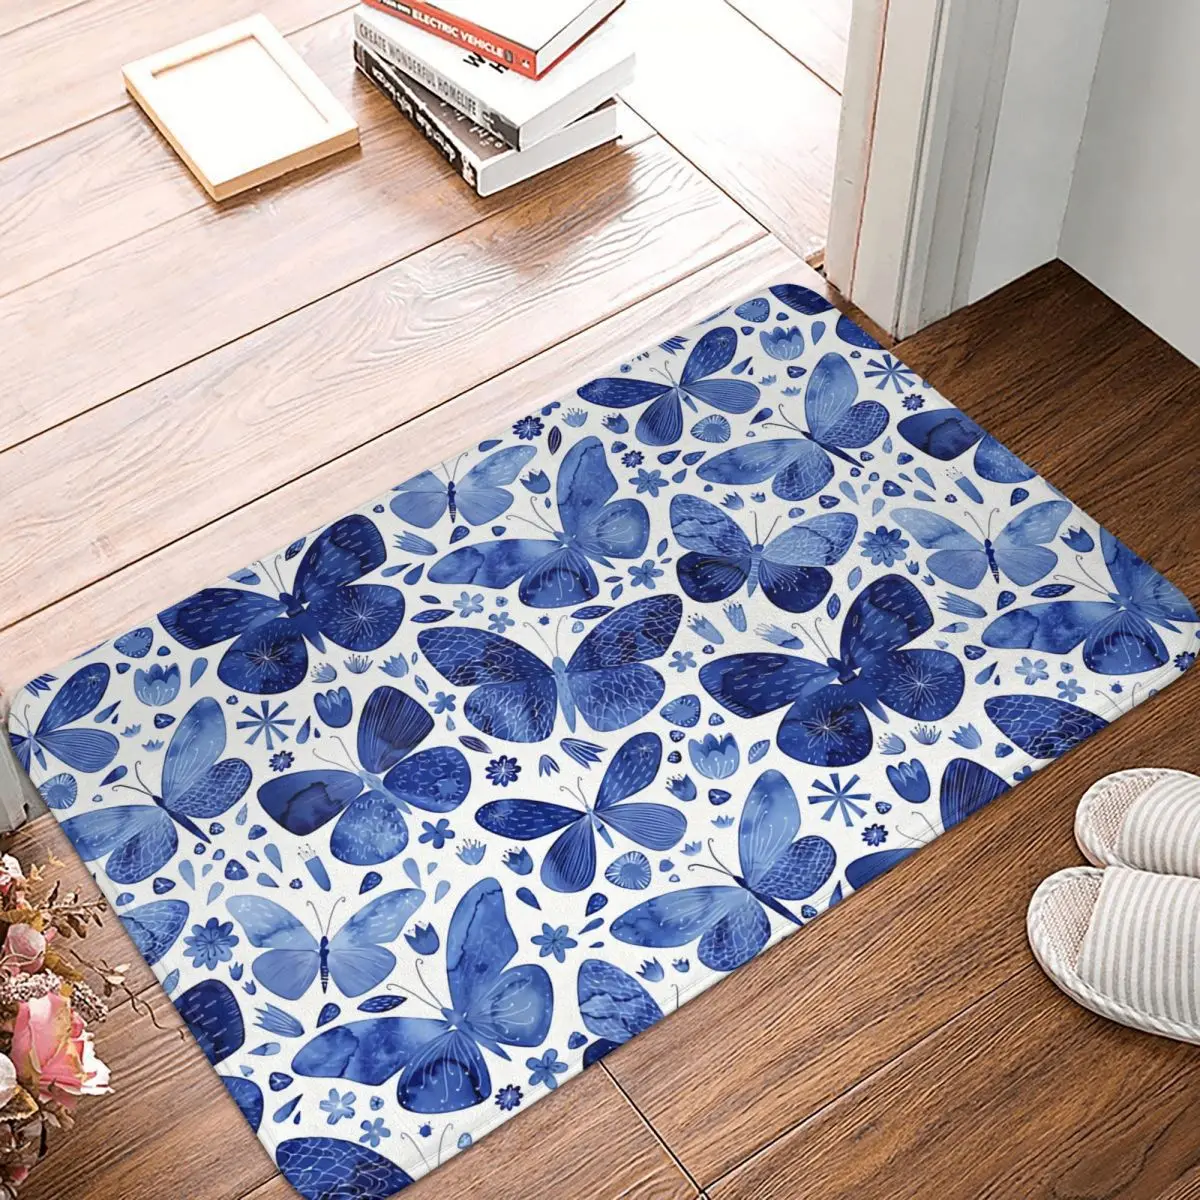 

Butterfly Butterflies Anti-Slip Doormat Bath Mat Blue Floor Carpet Welcome Rug Bedroom Decor